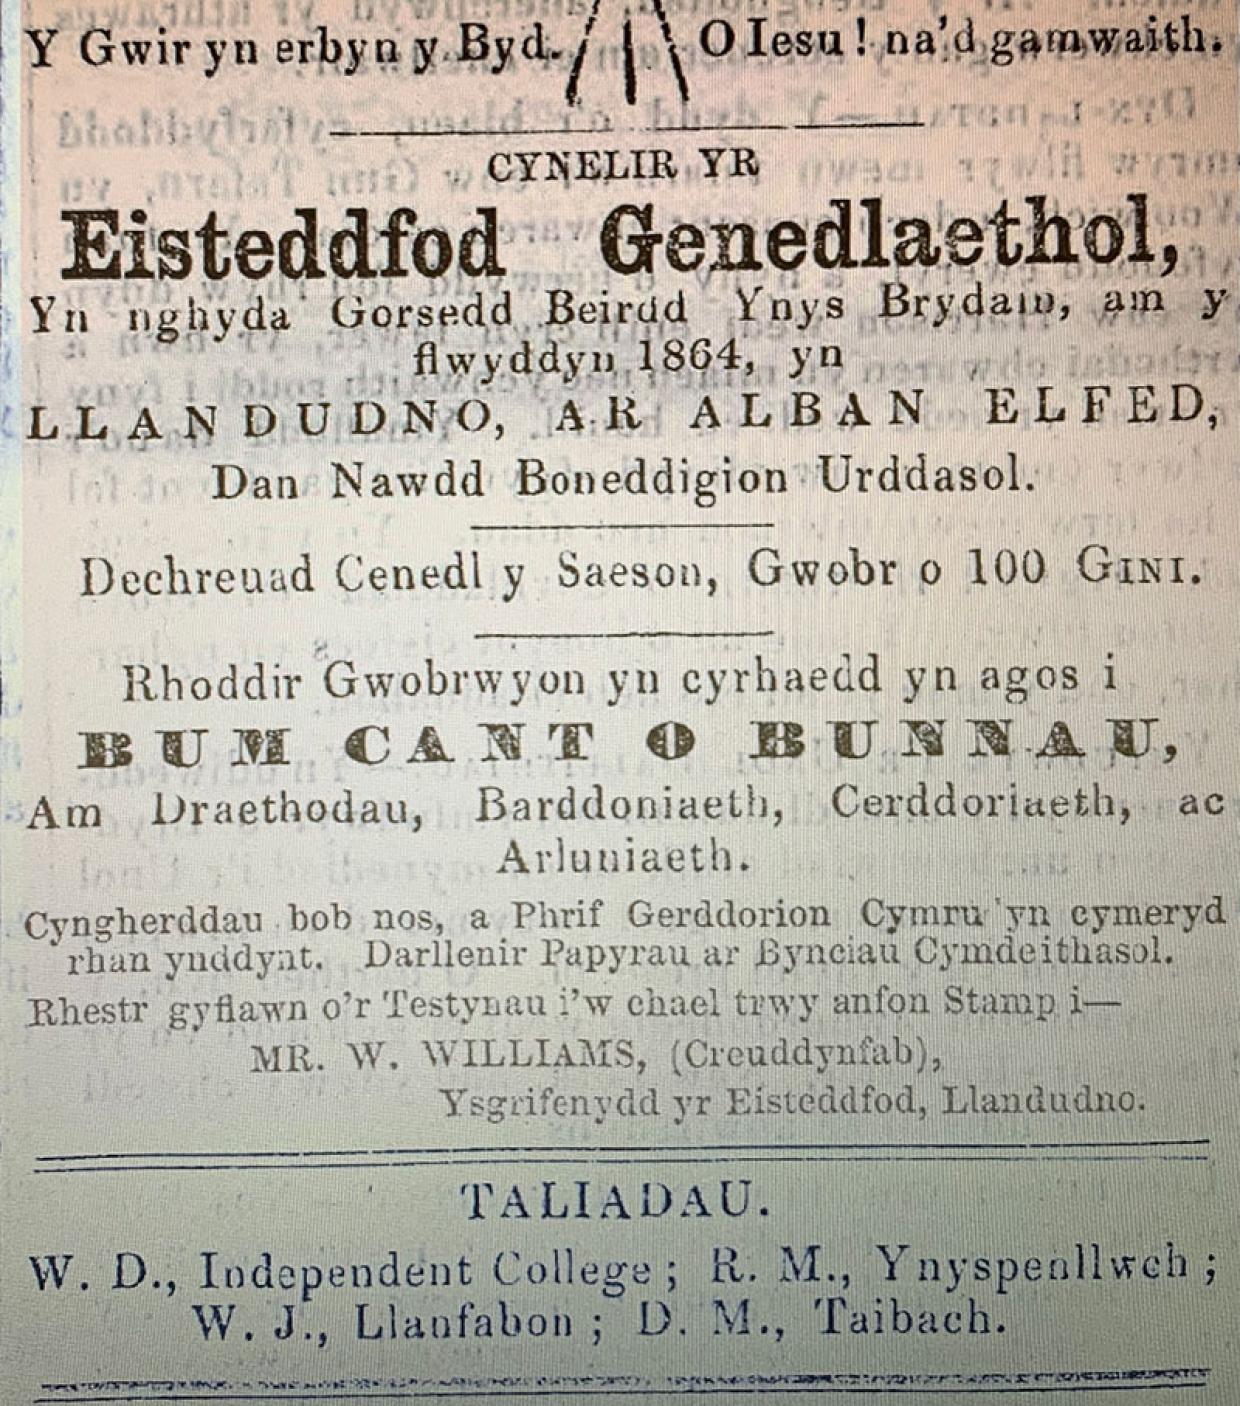 Eisteddfod Llandudno, 1864